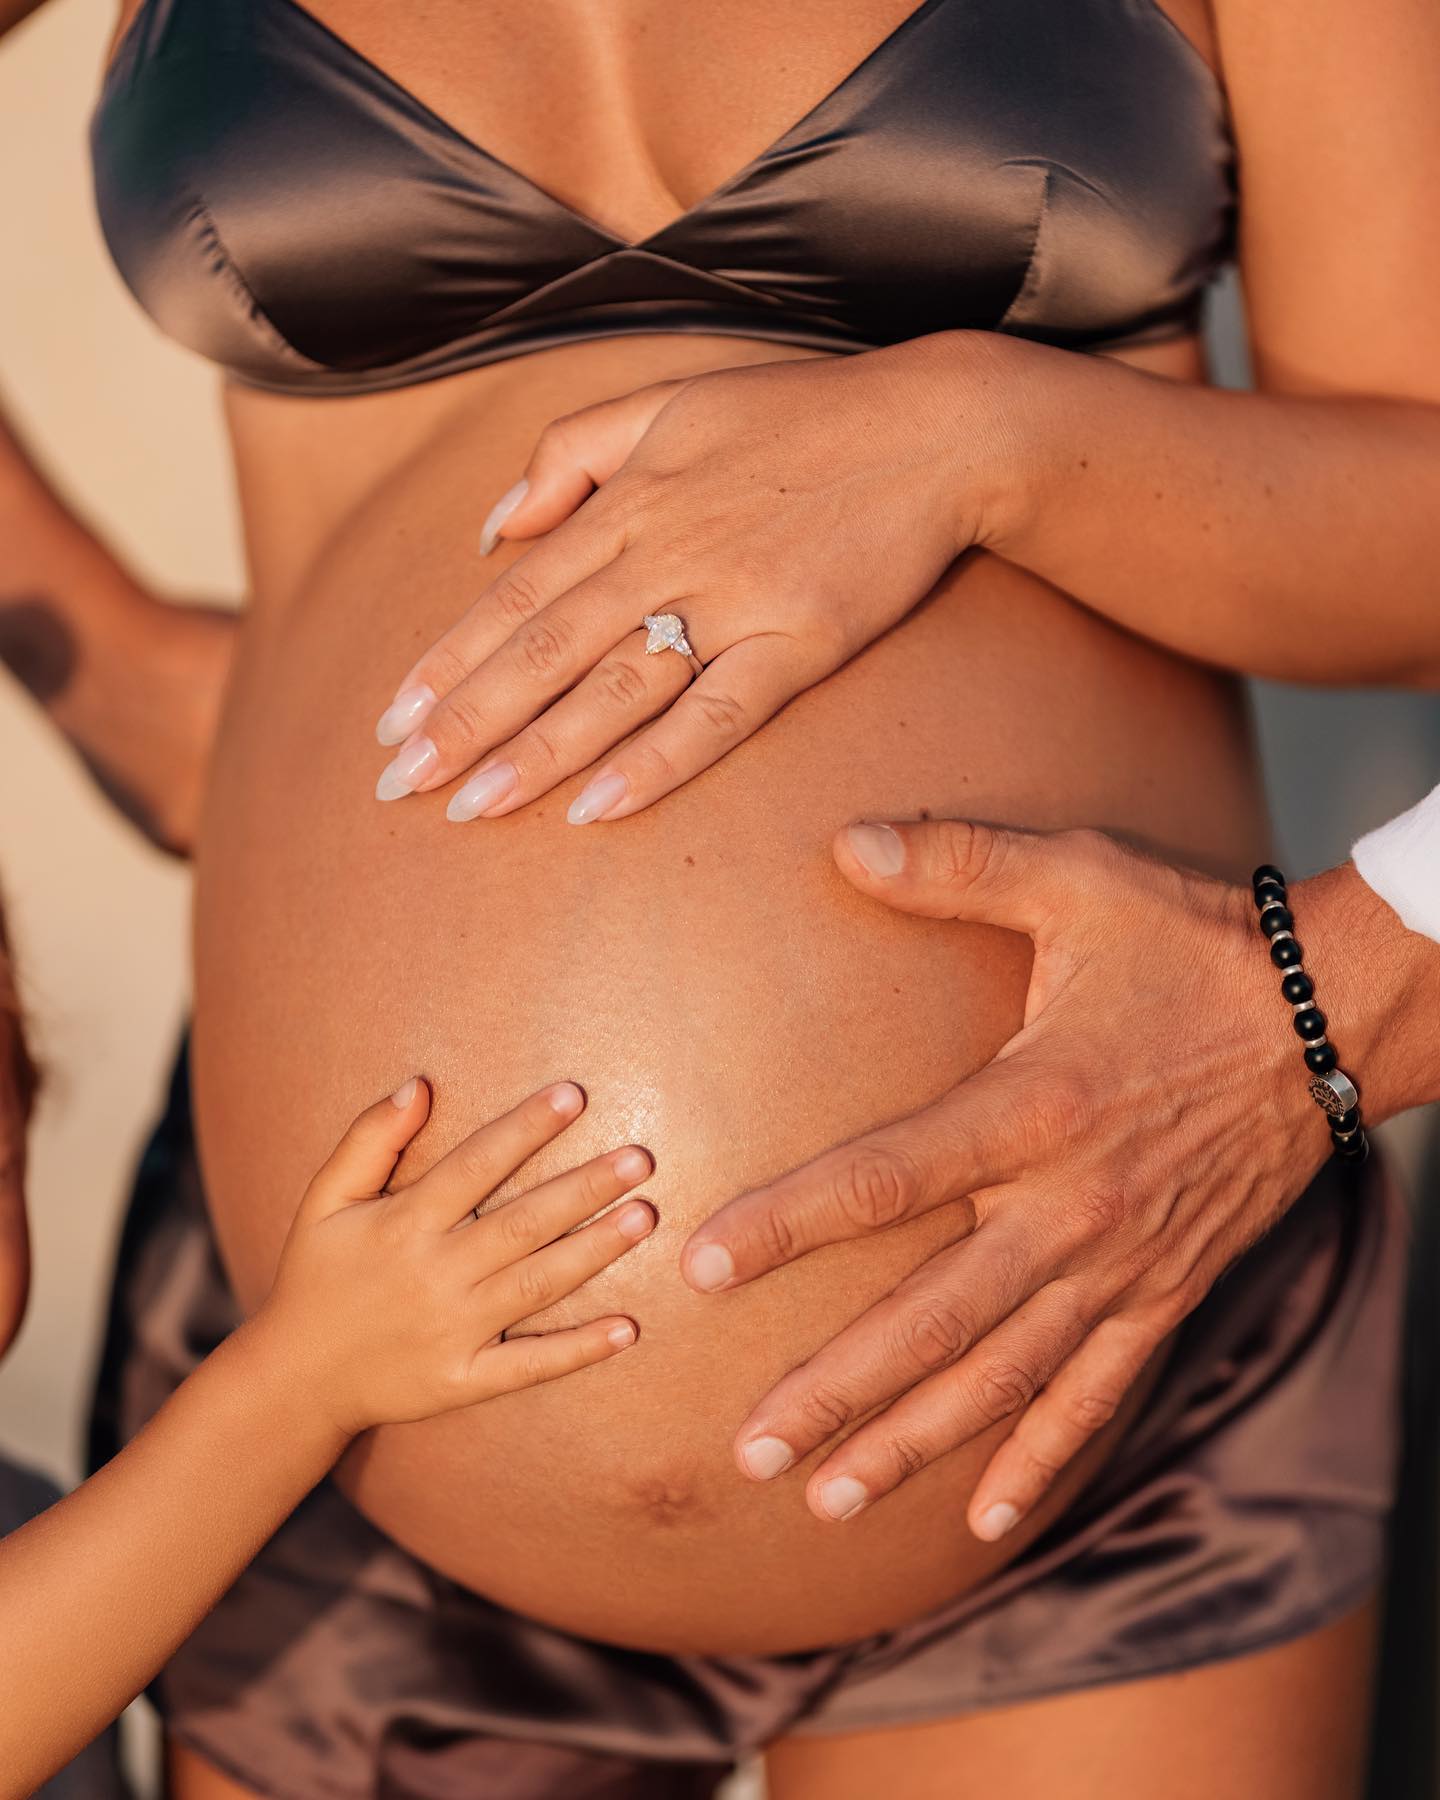 Пляжные фото беременной Нюши вызвали разные эмоции у юзеров Instagram